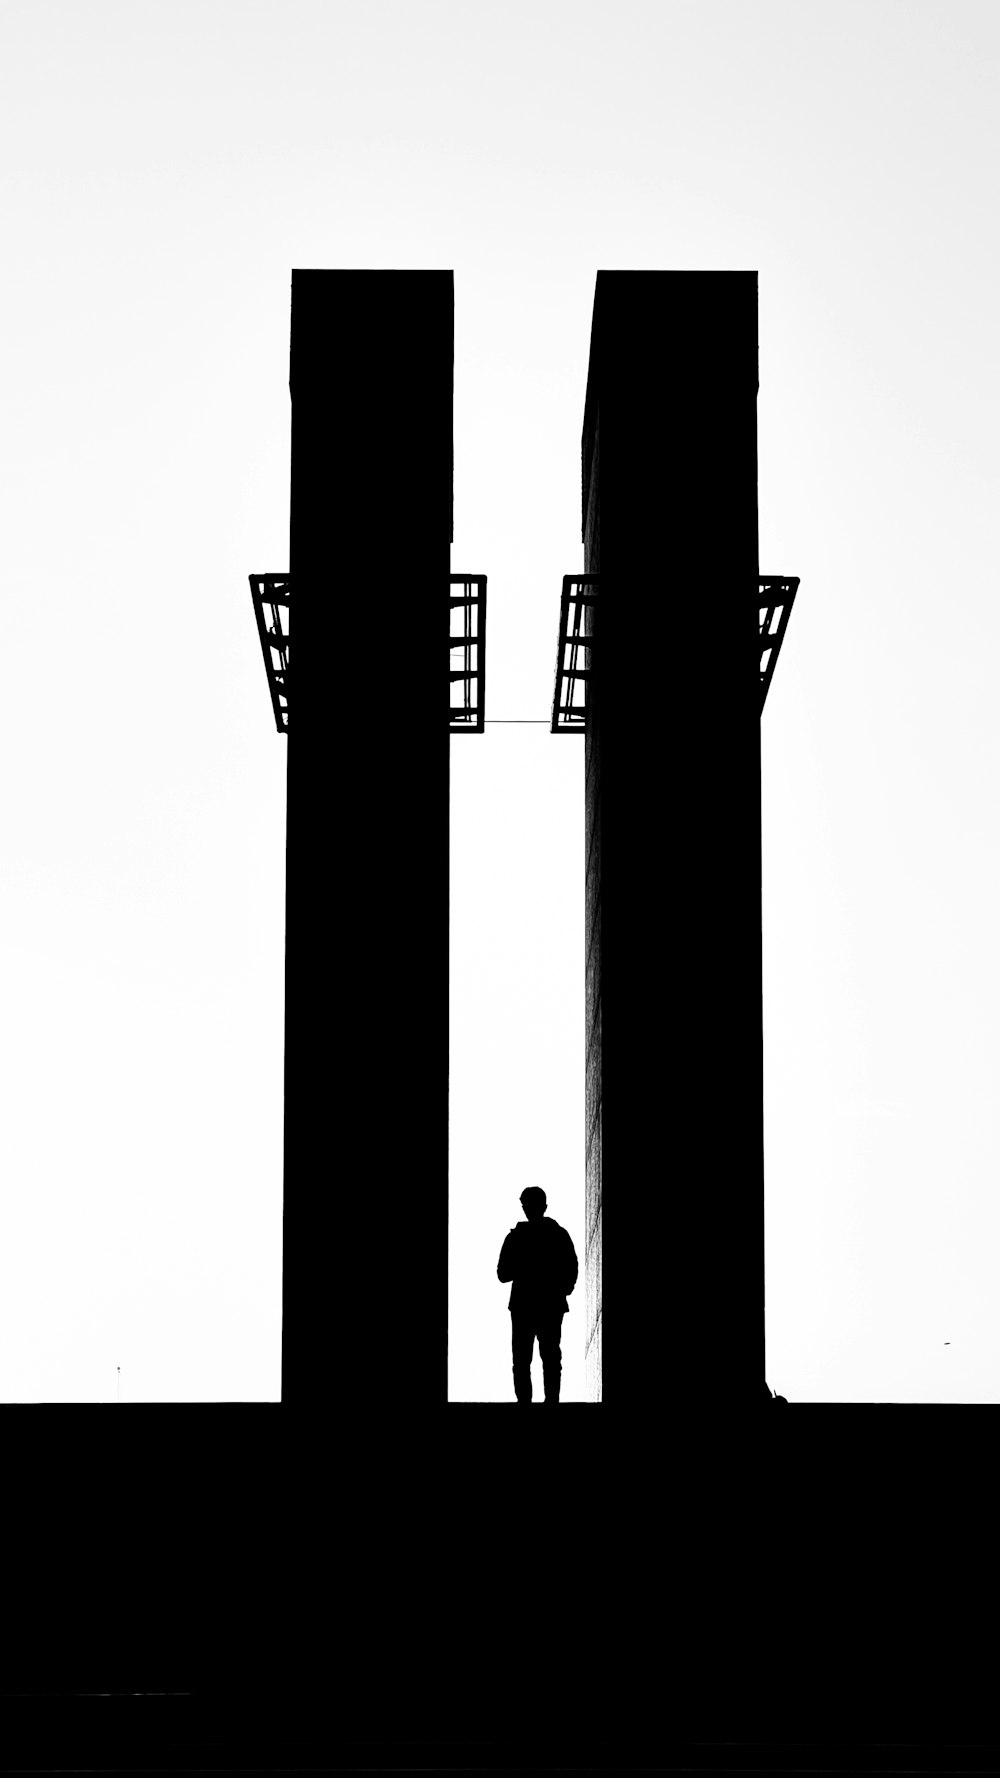 두 개의 높은 건물 사이에 서 있는 남자